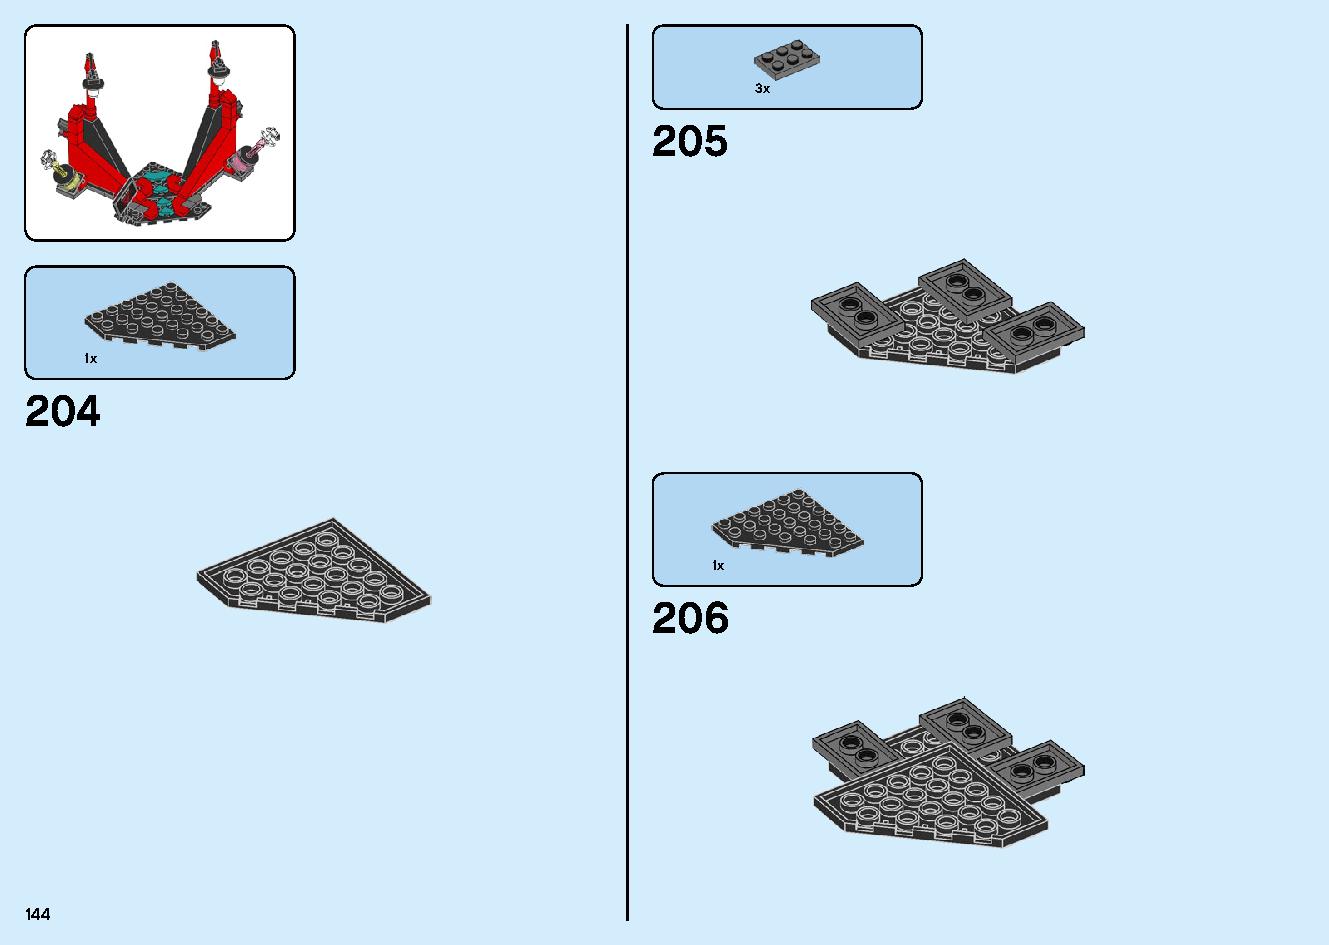 マッドキング神殿 71712 レゴの商品情報 レゴの説明書・組立方法 144 page